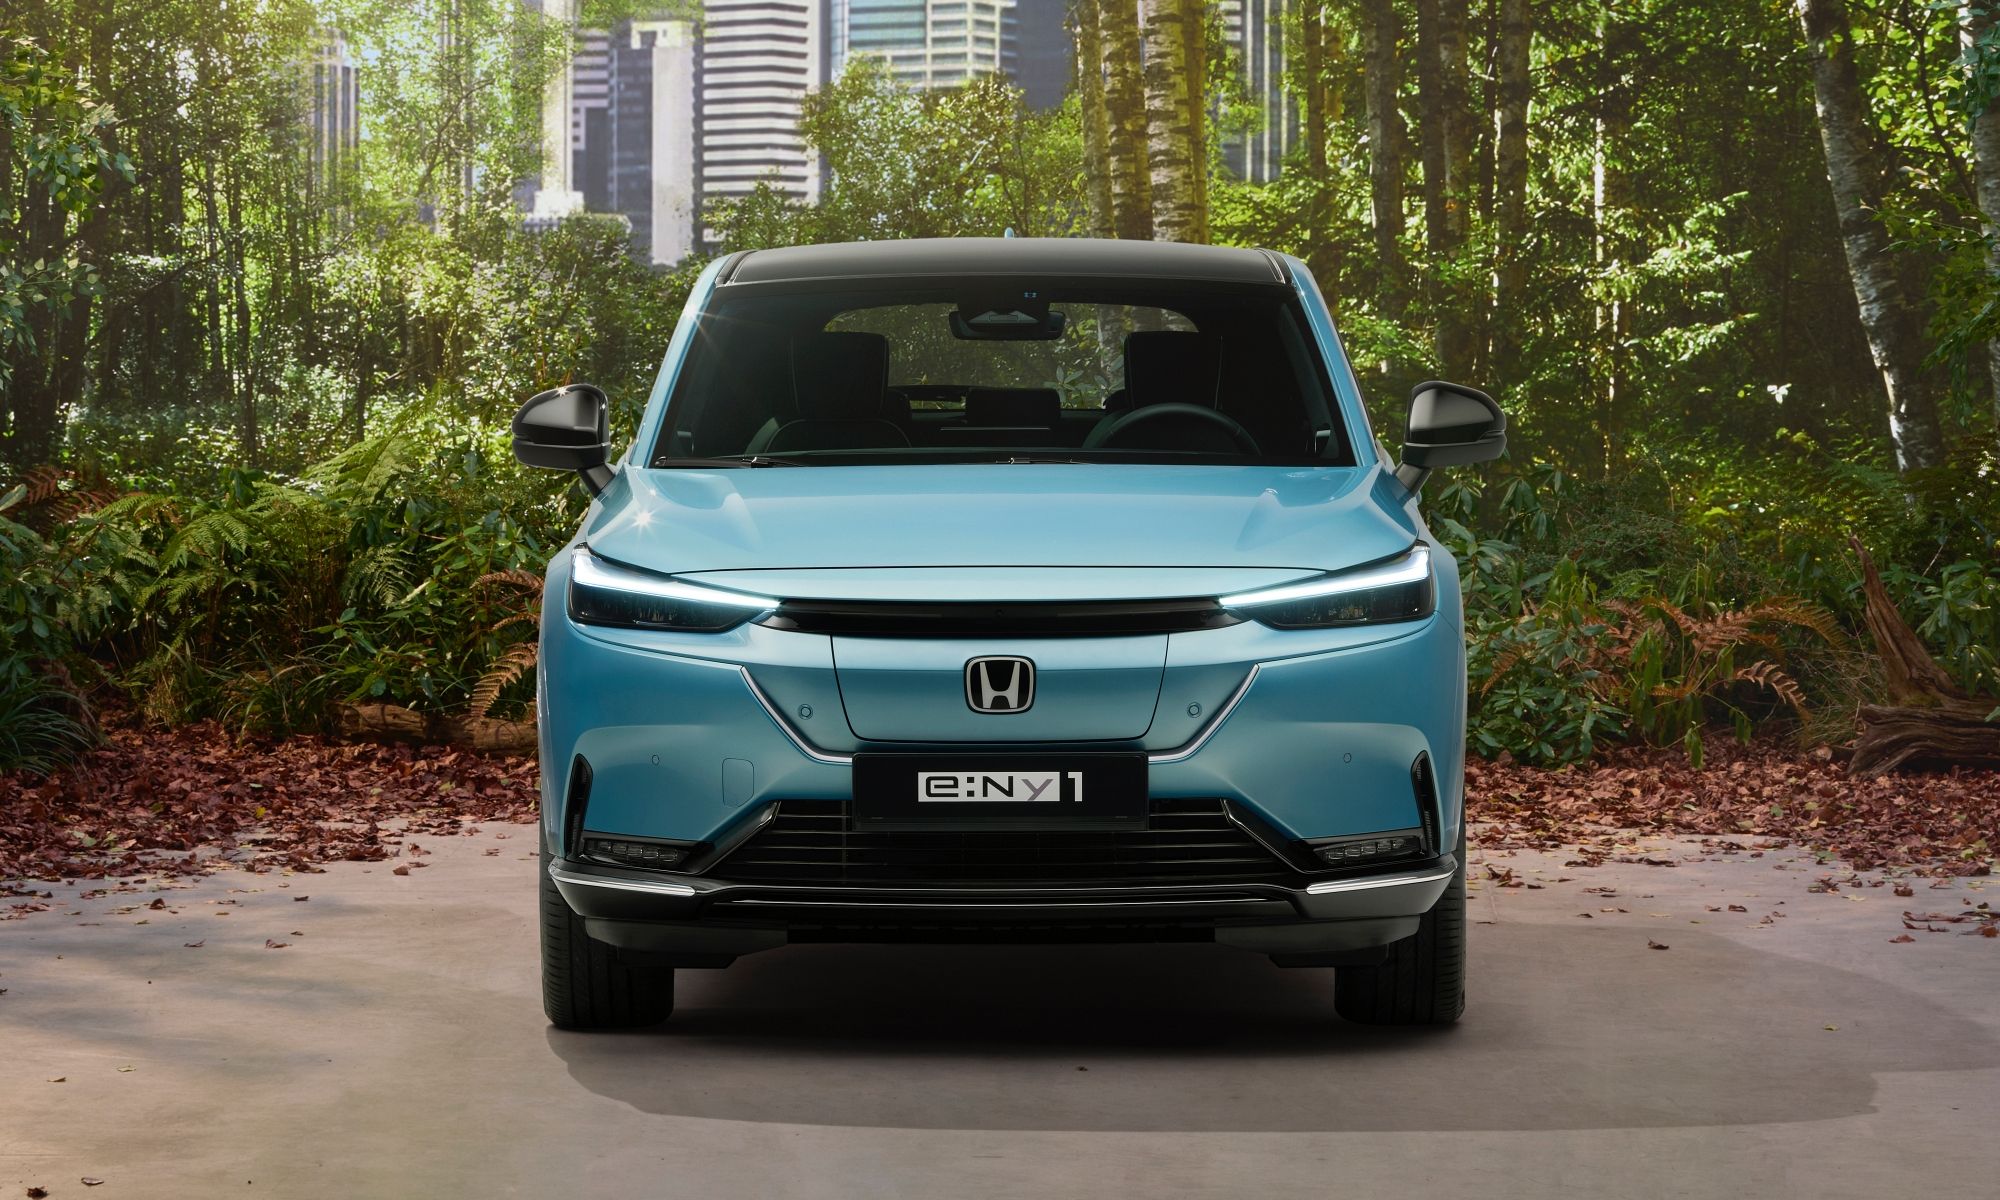 El e:Ny1 será el primer eléctrico de nueva generación que Honda saque al mercado